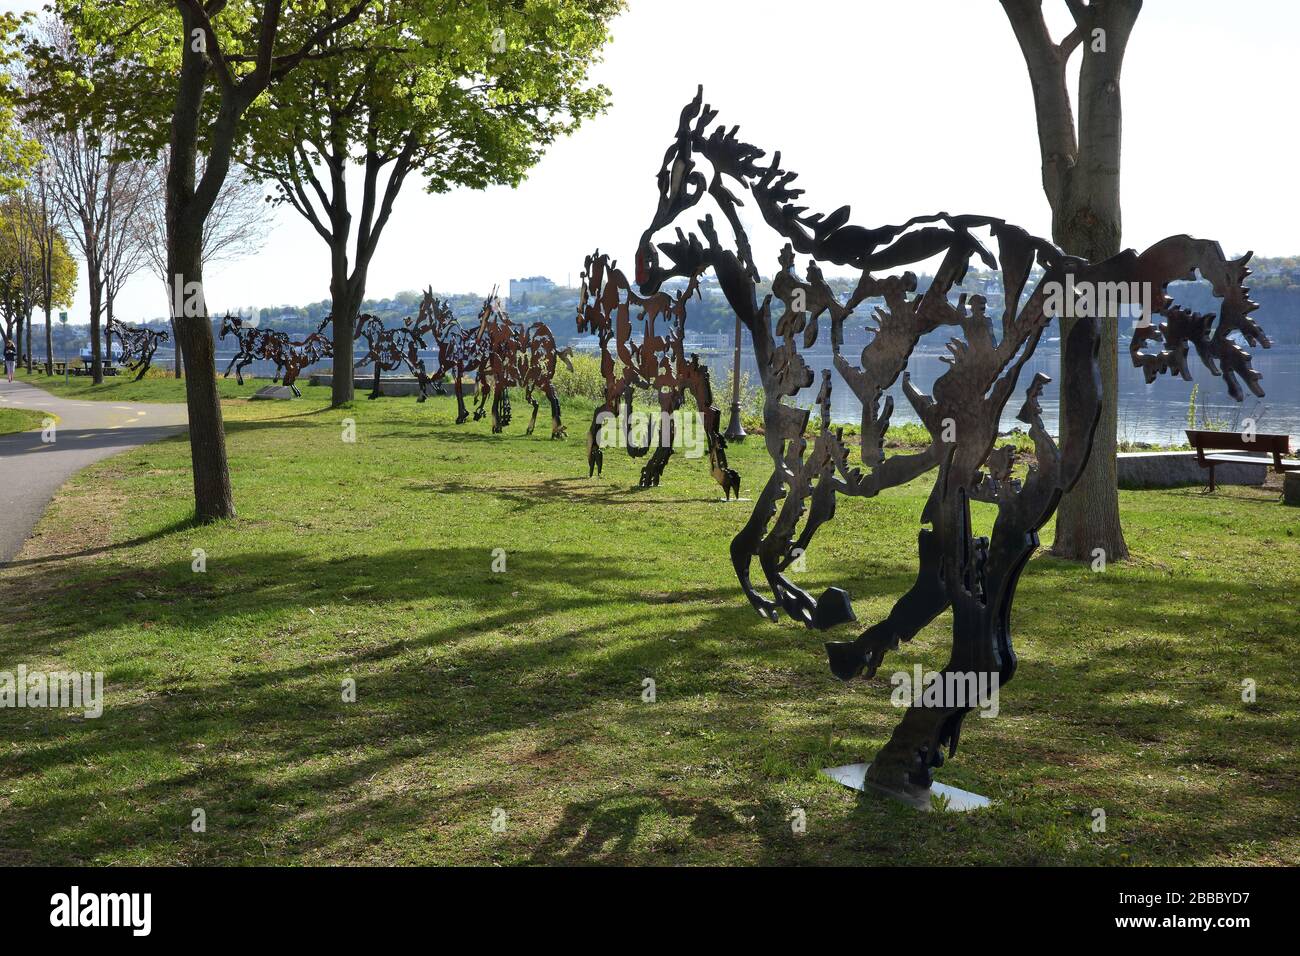 Huit chevaux en tôle d'acier grandeur nature du sculpteur Joe Fafard, intitulé « do Re mi FA sol la si do », chacun avec des découpes représentant des scènes et des figures du passé québécois. Parc notre-Dame-de-la-Garde, boul. Champlain, Québec, Québec, Canada Banque D'Images